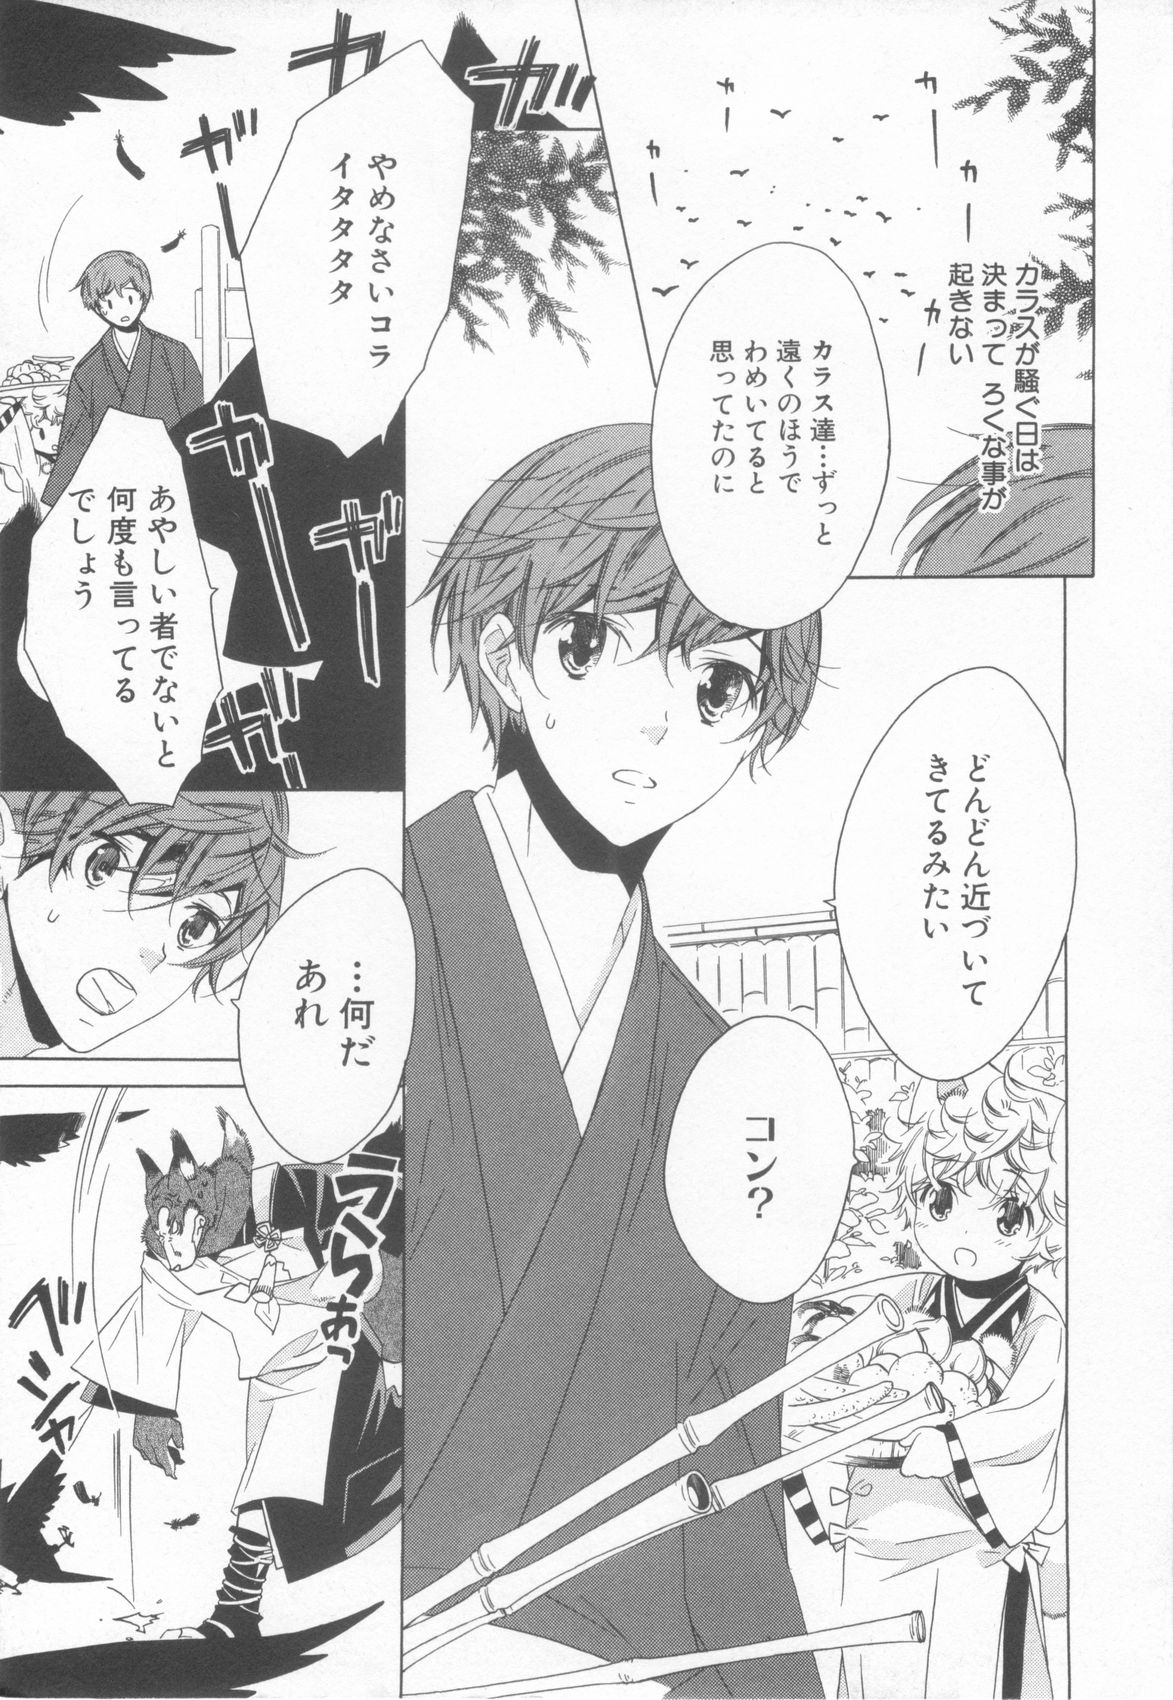 [Anthology] Shota Tama Vol. 3 page 27 full